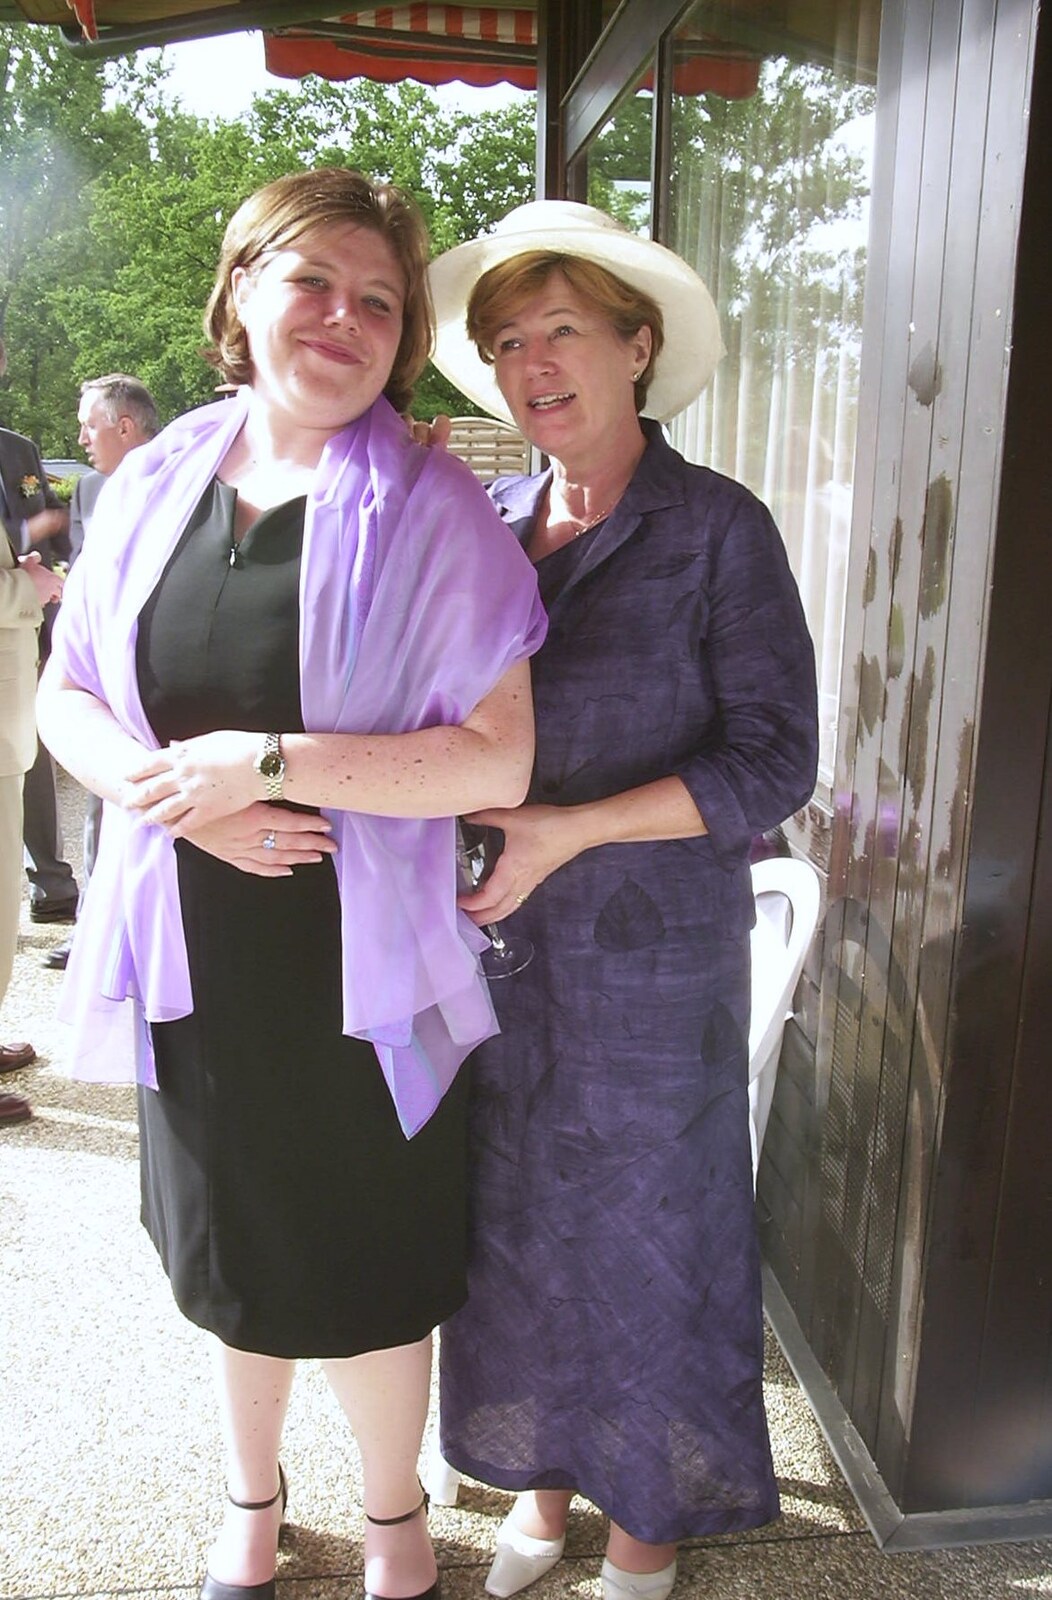 Sis and Judith from Elisa and Luigi's Wedding, Carouge, Geneva, Switzerland - 20th July 2001